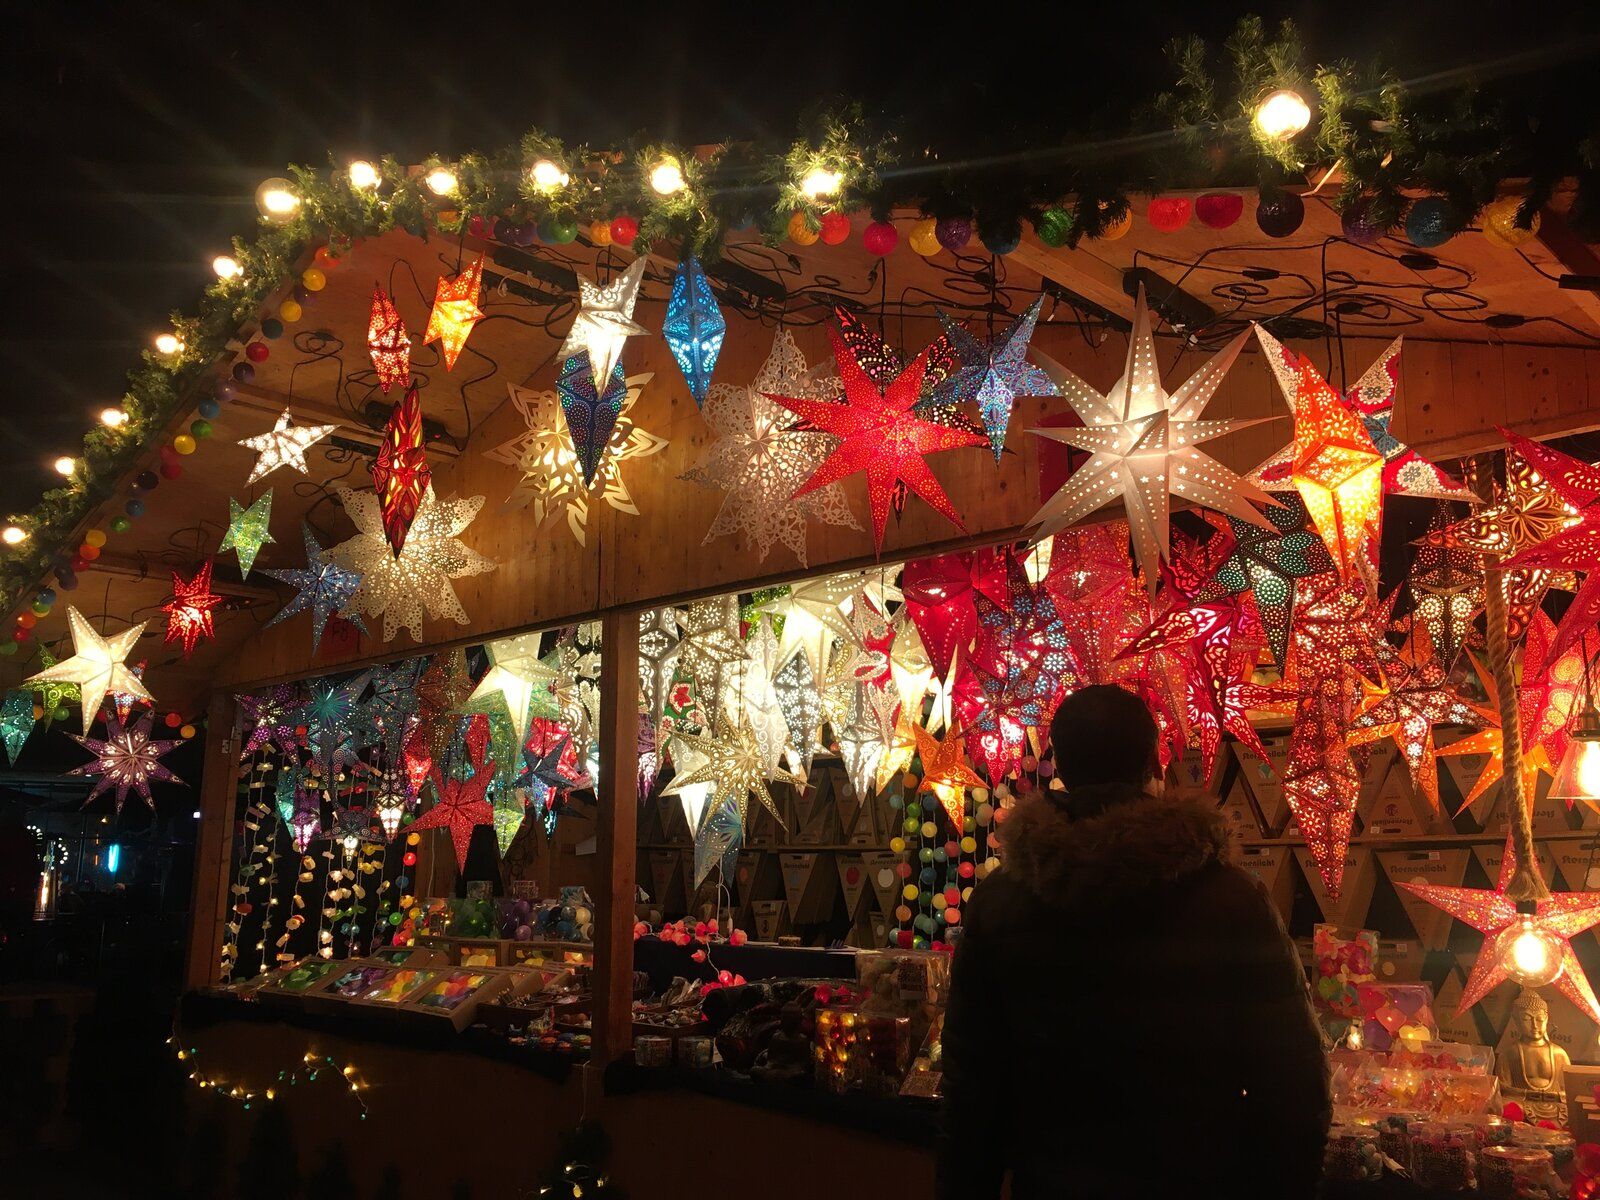 Mercado Natal Frankfurt